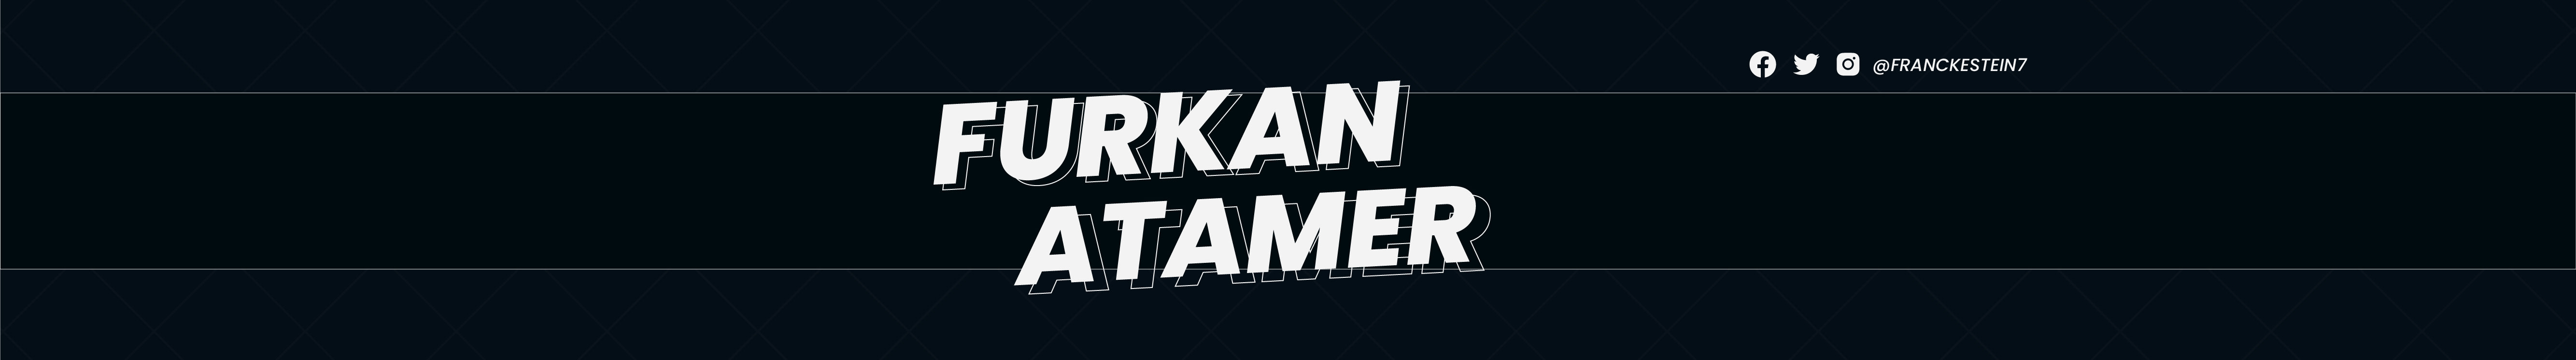 Furkan Atamer's profile banner